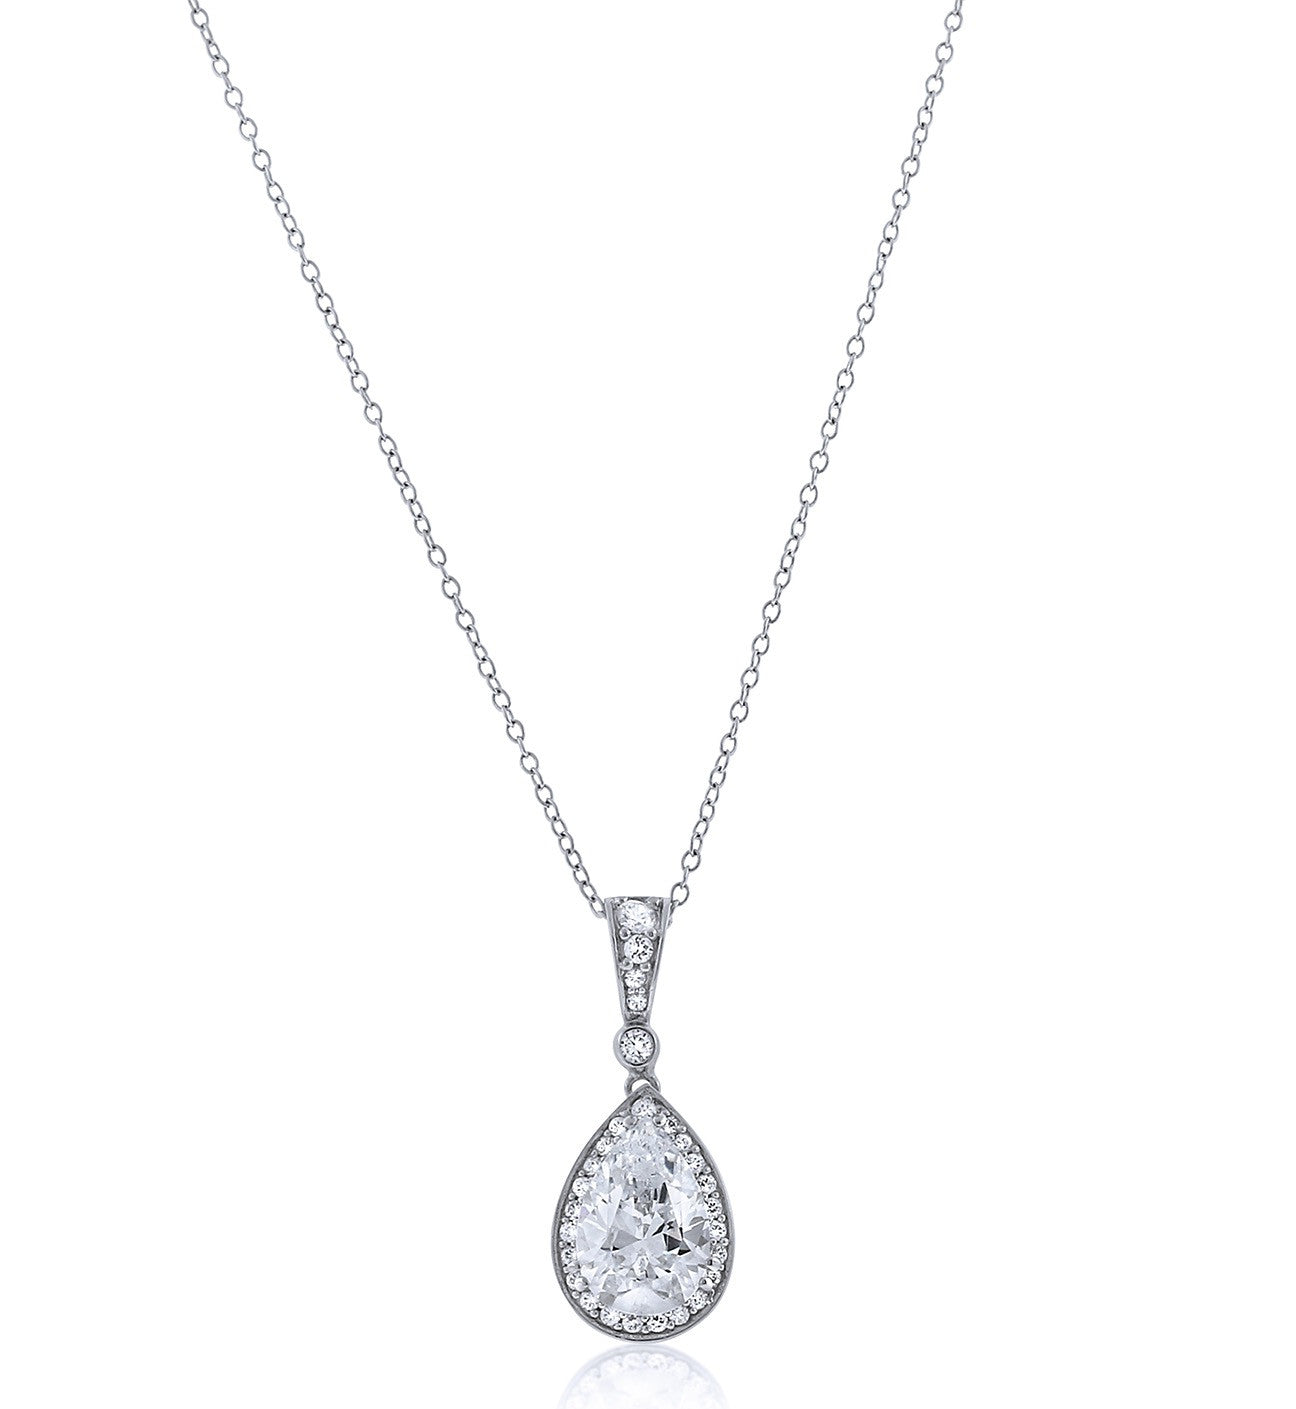 Oval Chandi Diamond Pendant Necklace by Bobby Schandra